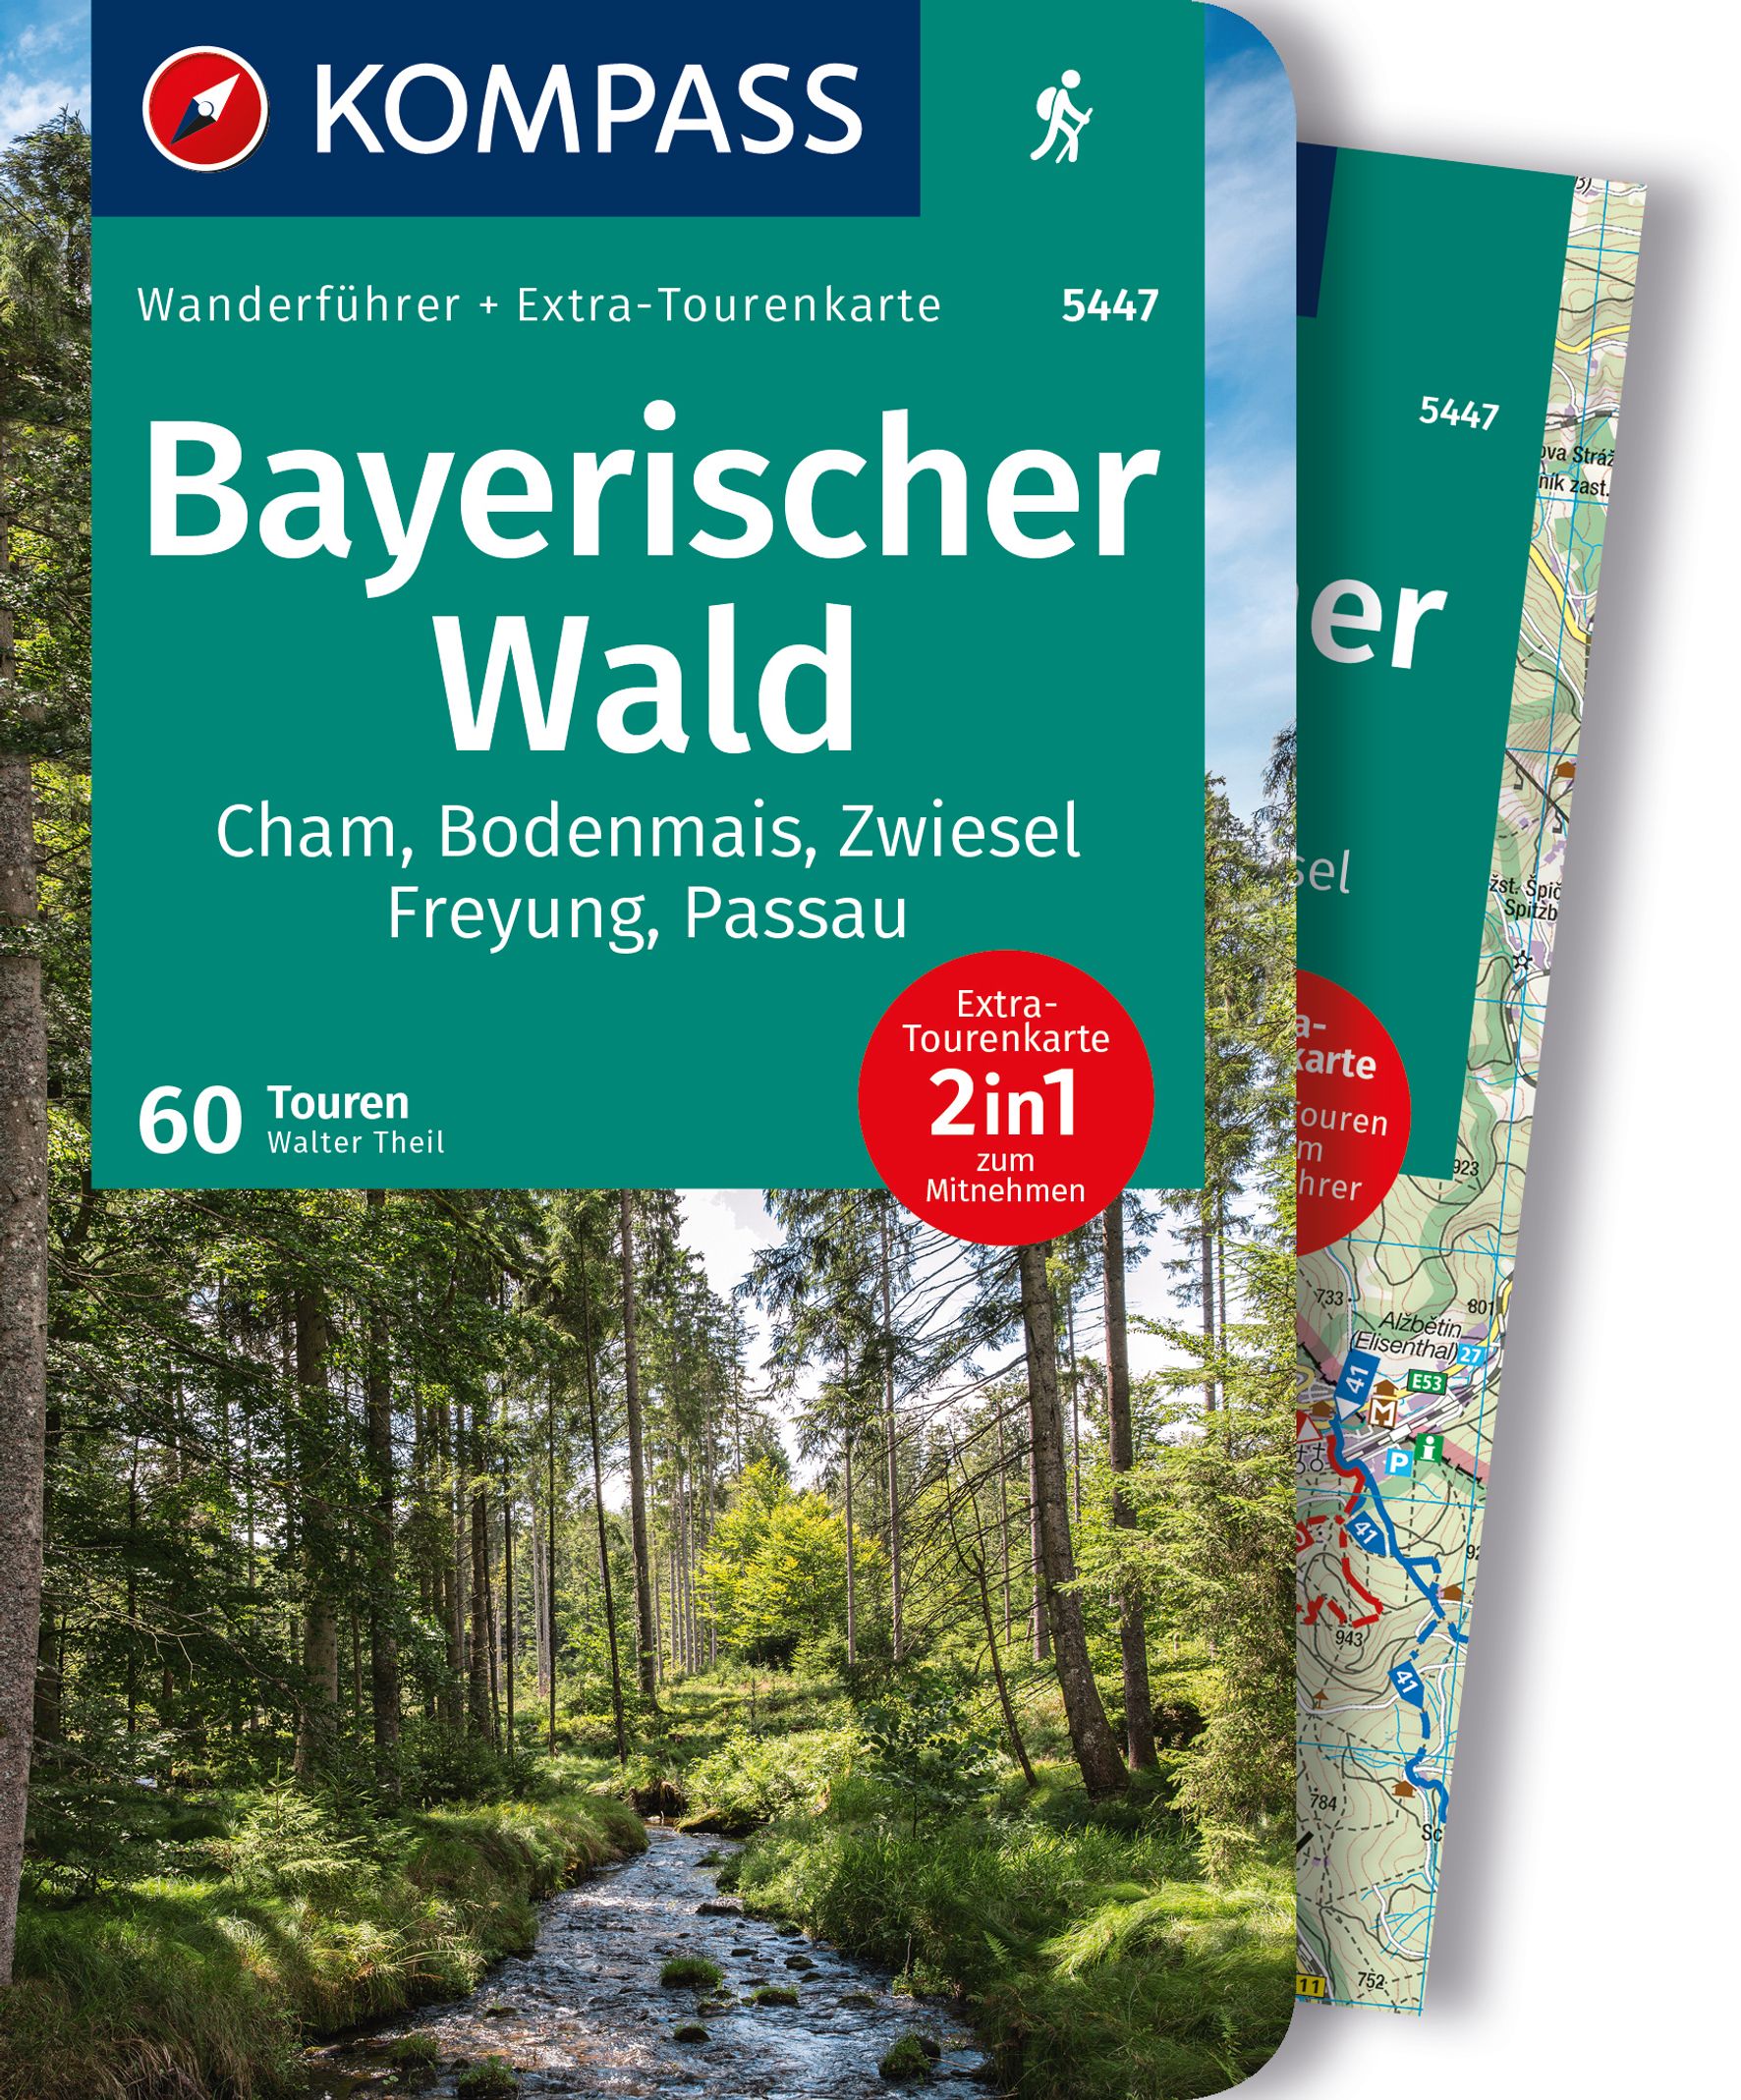 MAIRDUMONT Bayerischer Wald, Cham, Bodenmais, Zwiesel, Freyung, Passau, 60 Touren mit Extra-Tourenkarte